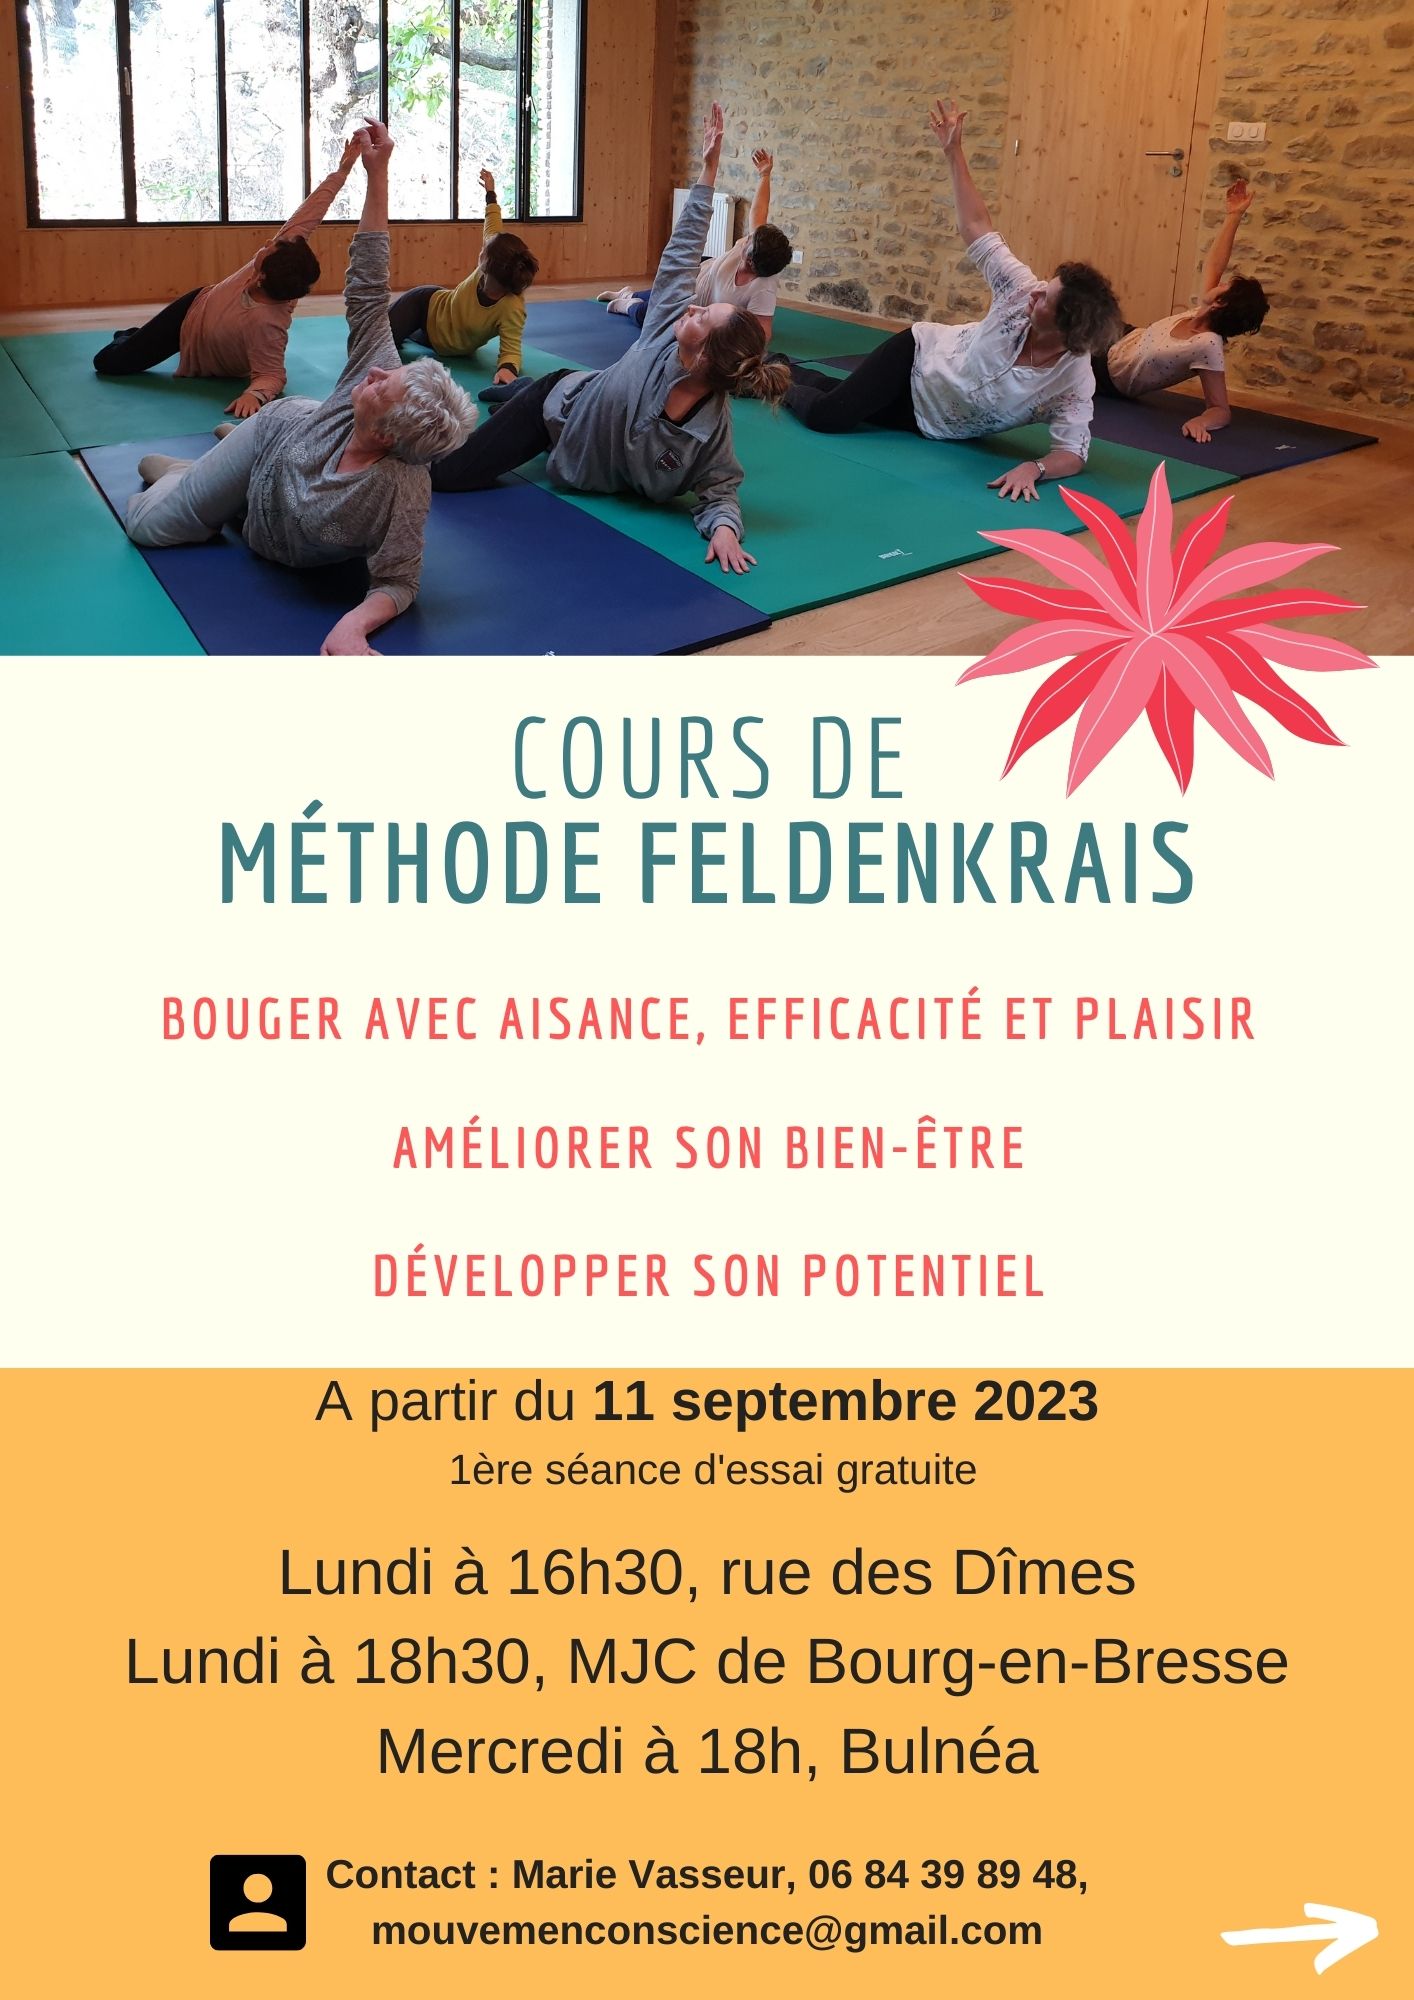 Image pour le cours collectif Cours collectif LUNDI 18h30 à Bourg-en-Bresse (MJC)